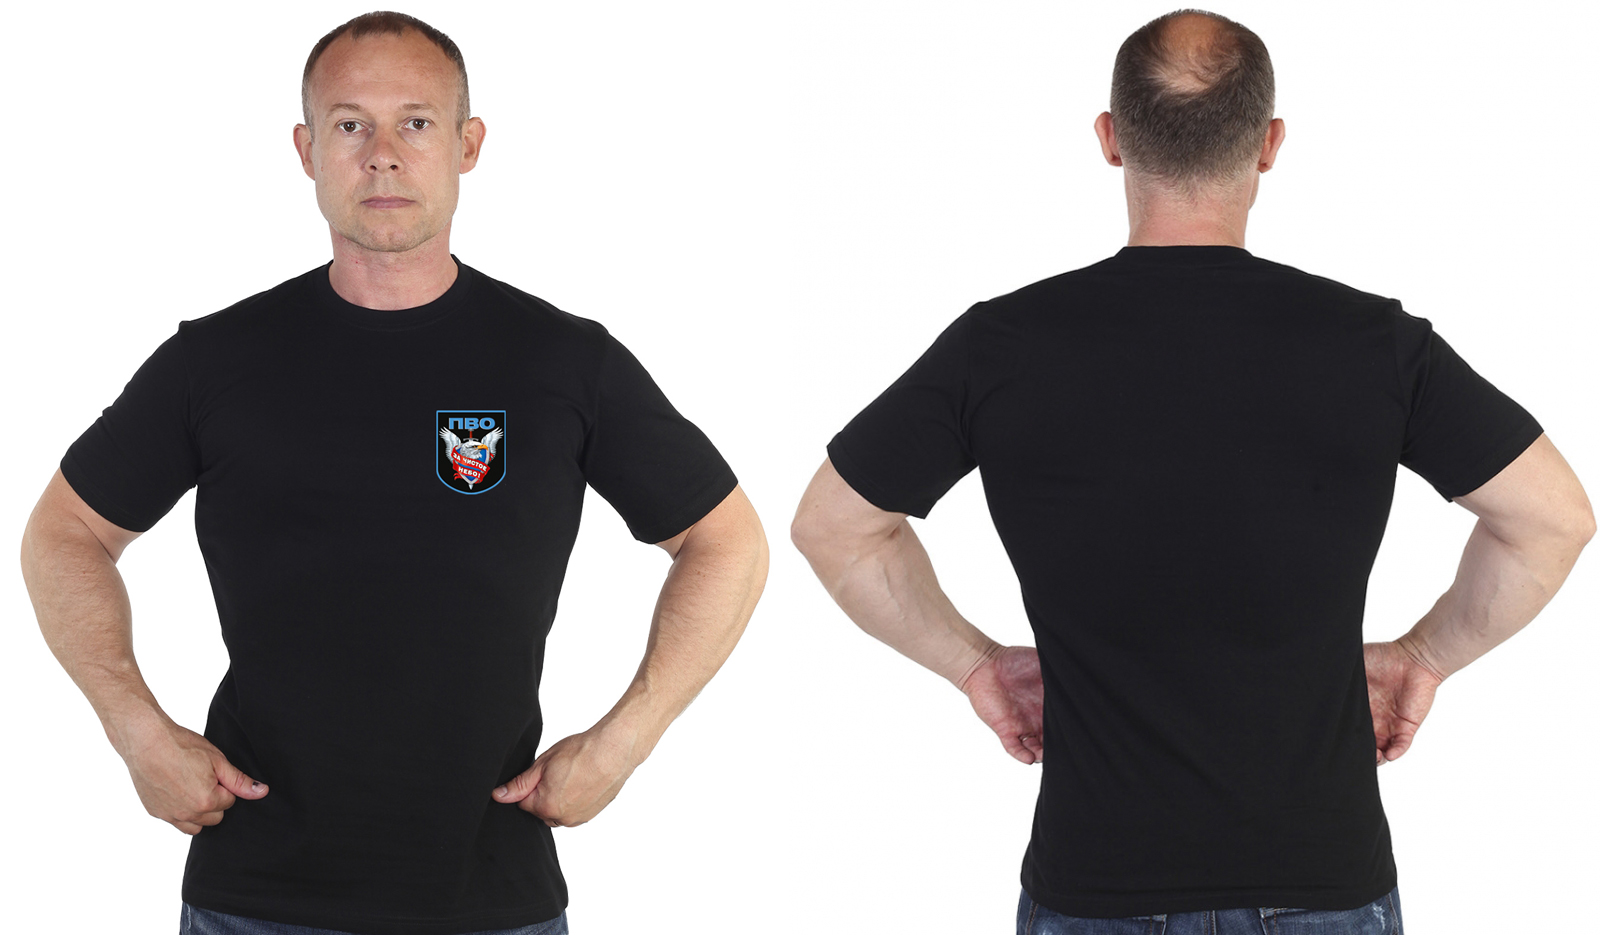 Чёрная футболка с термотрансфером "ПВО" 